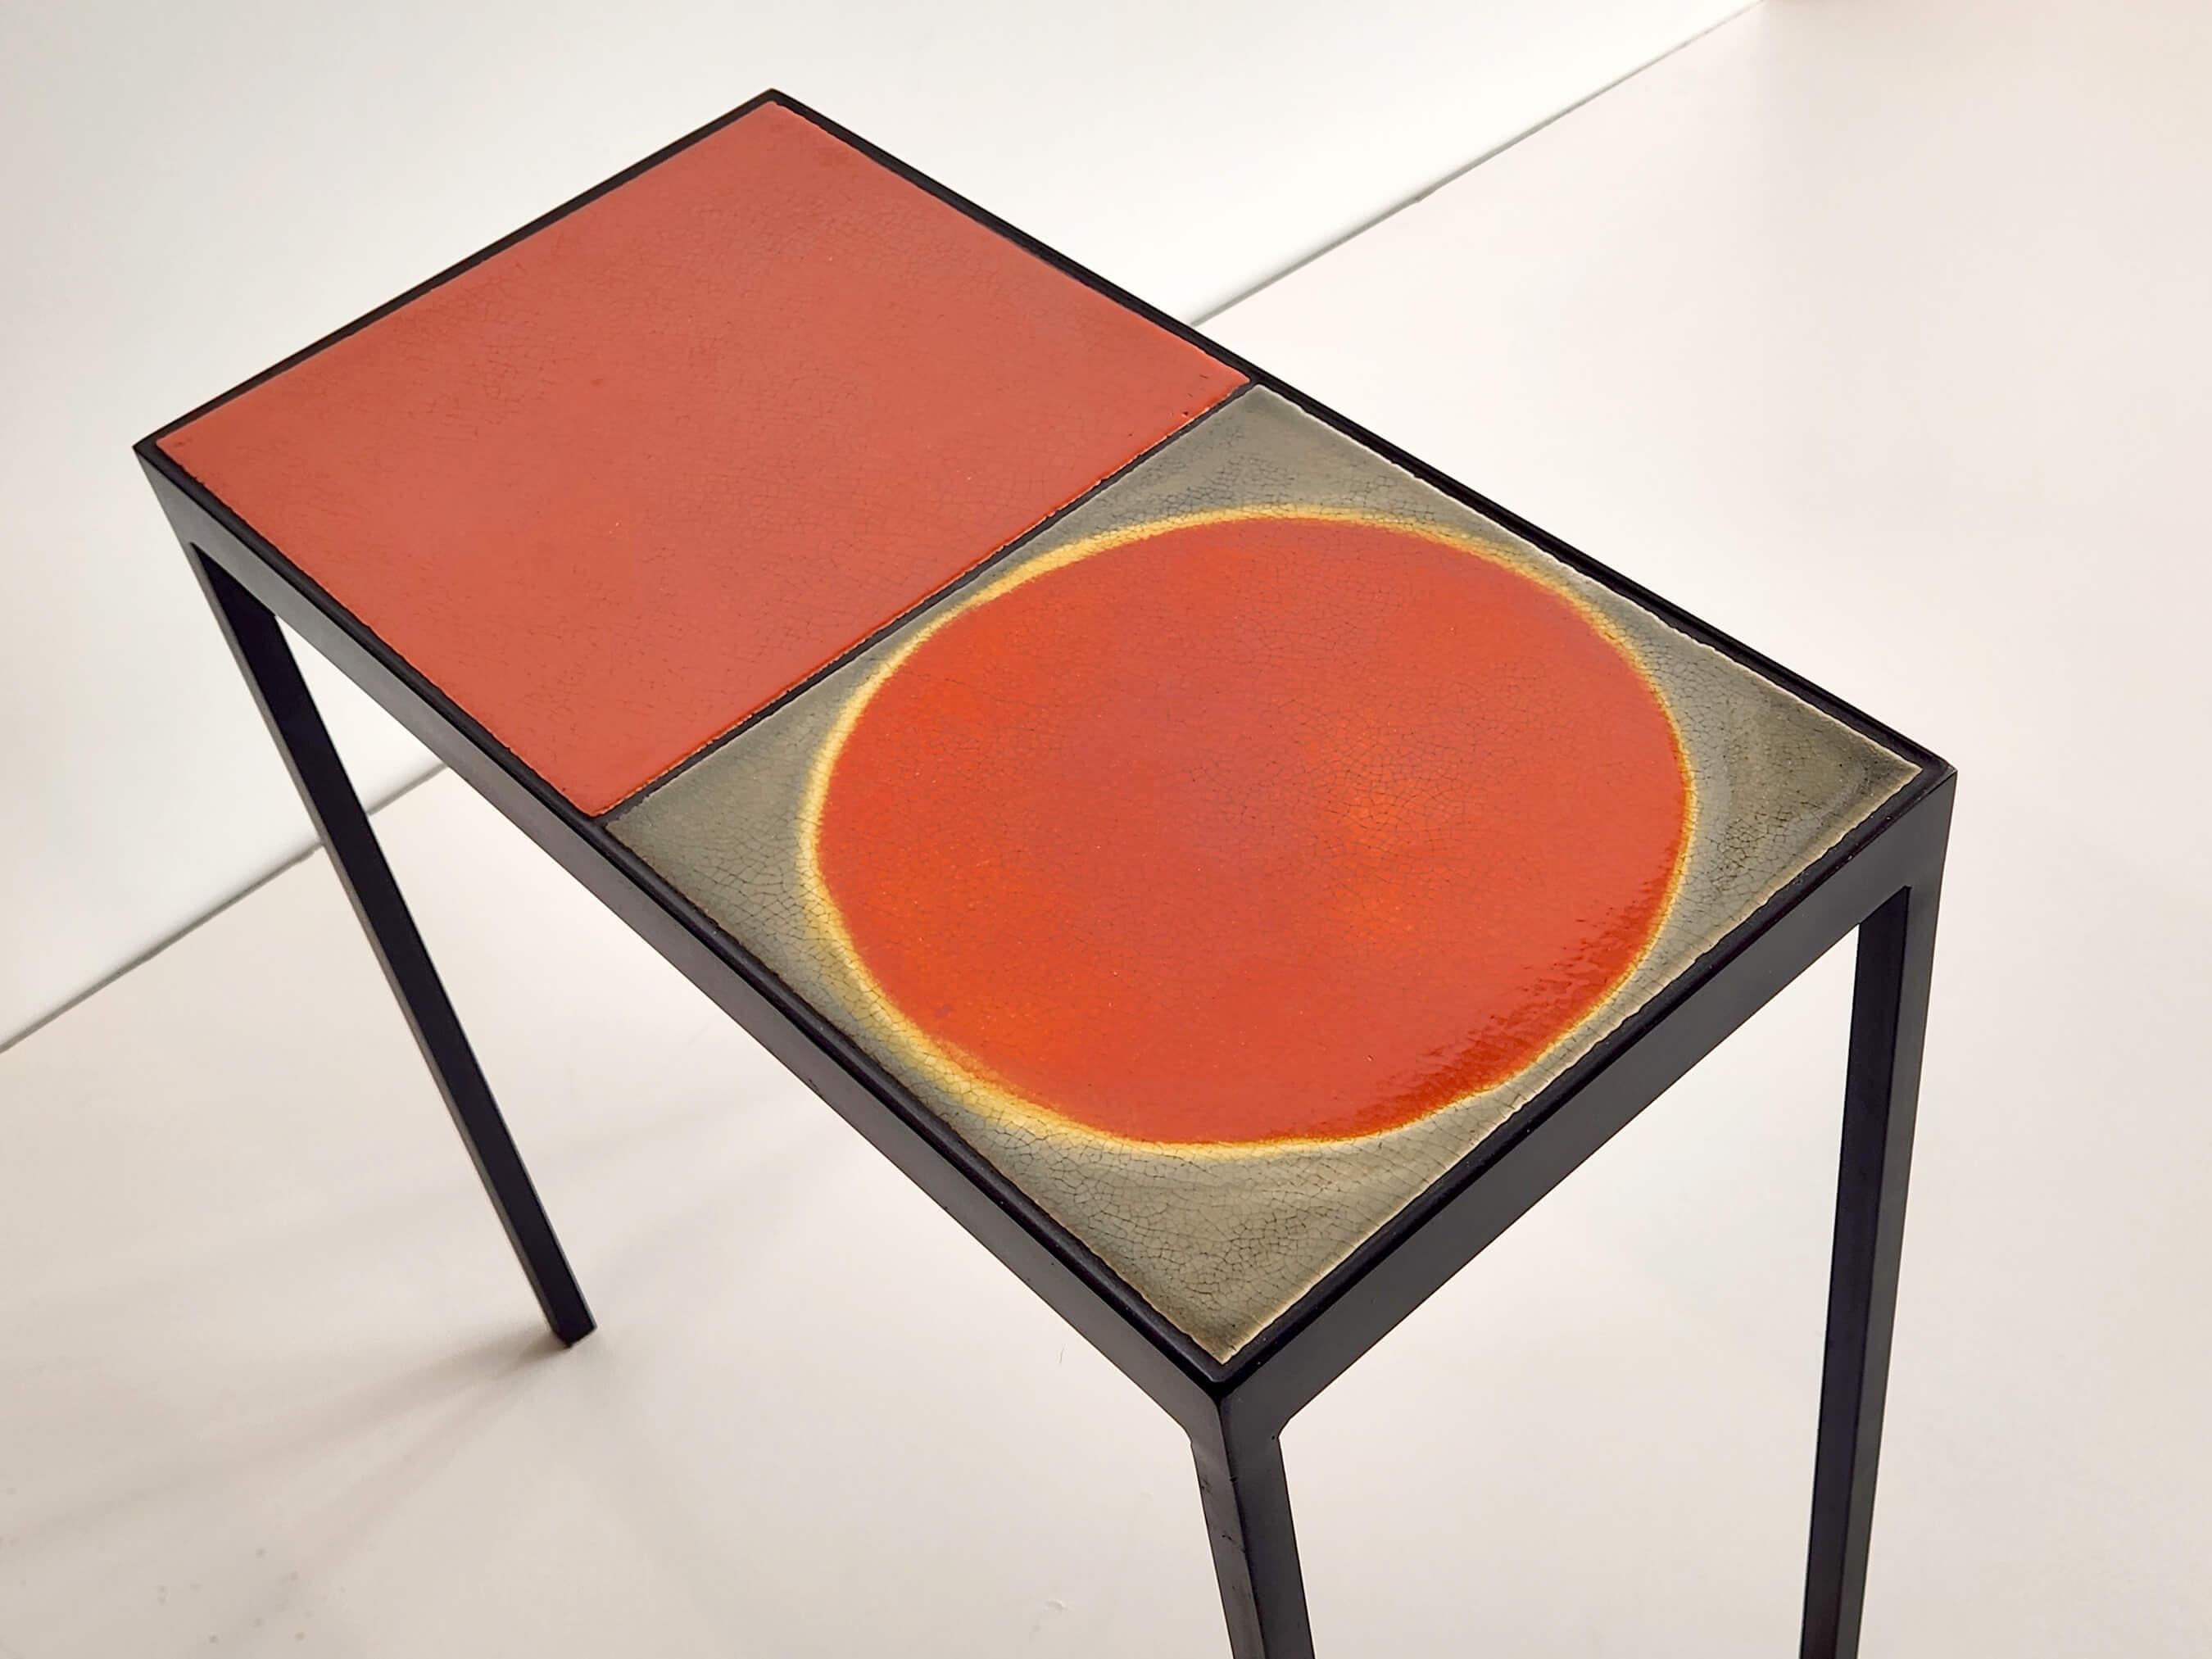 Ces tables d'appoint doubles ont été réalisées avec des carreaux de céramique fabriqués dans les années 1970 par M. Capron, l'un des céramistes les plus connus de l'ère moderne.  Chaque carreau est unique, émaillé à la main et varié en couleur et en